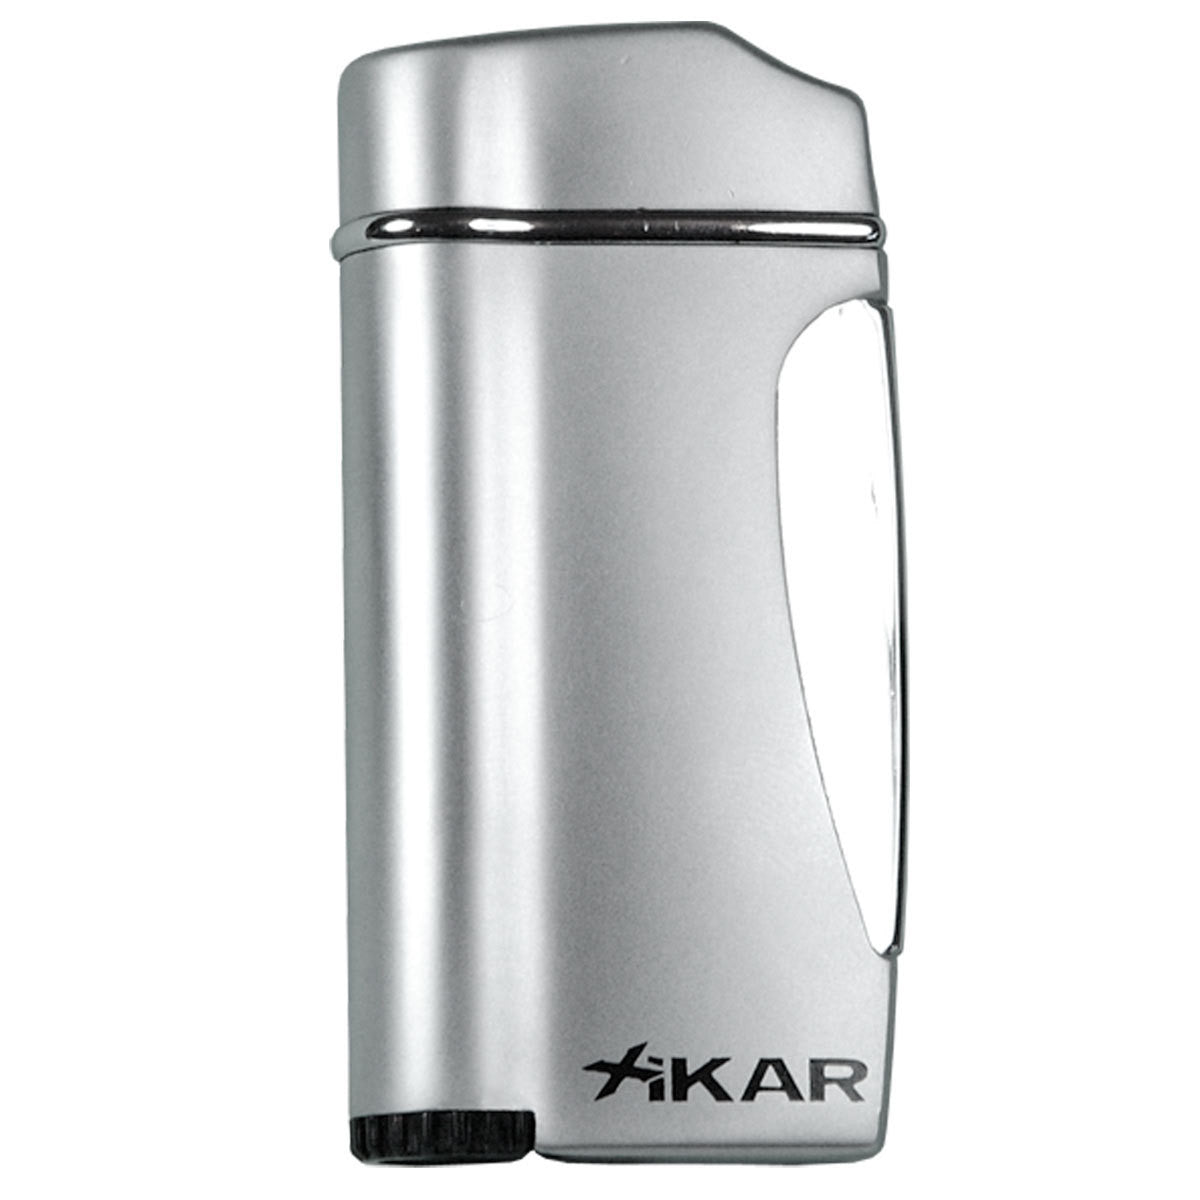 Xikar Executive Lighter Silver - Humidors Wholesaler